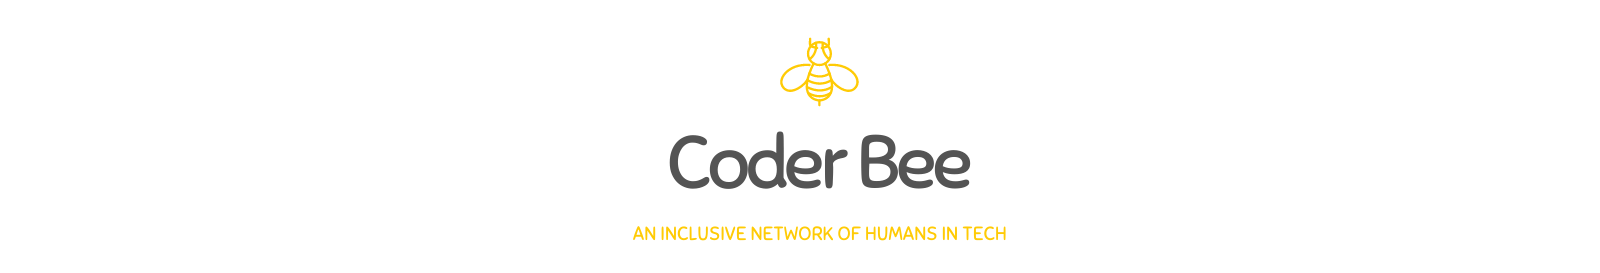 Coder Bee